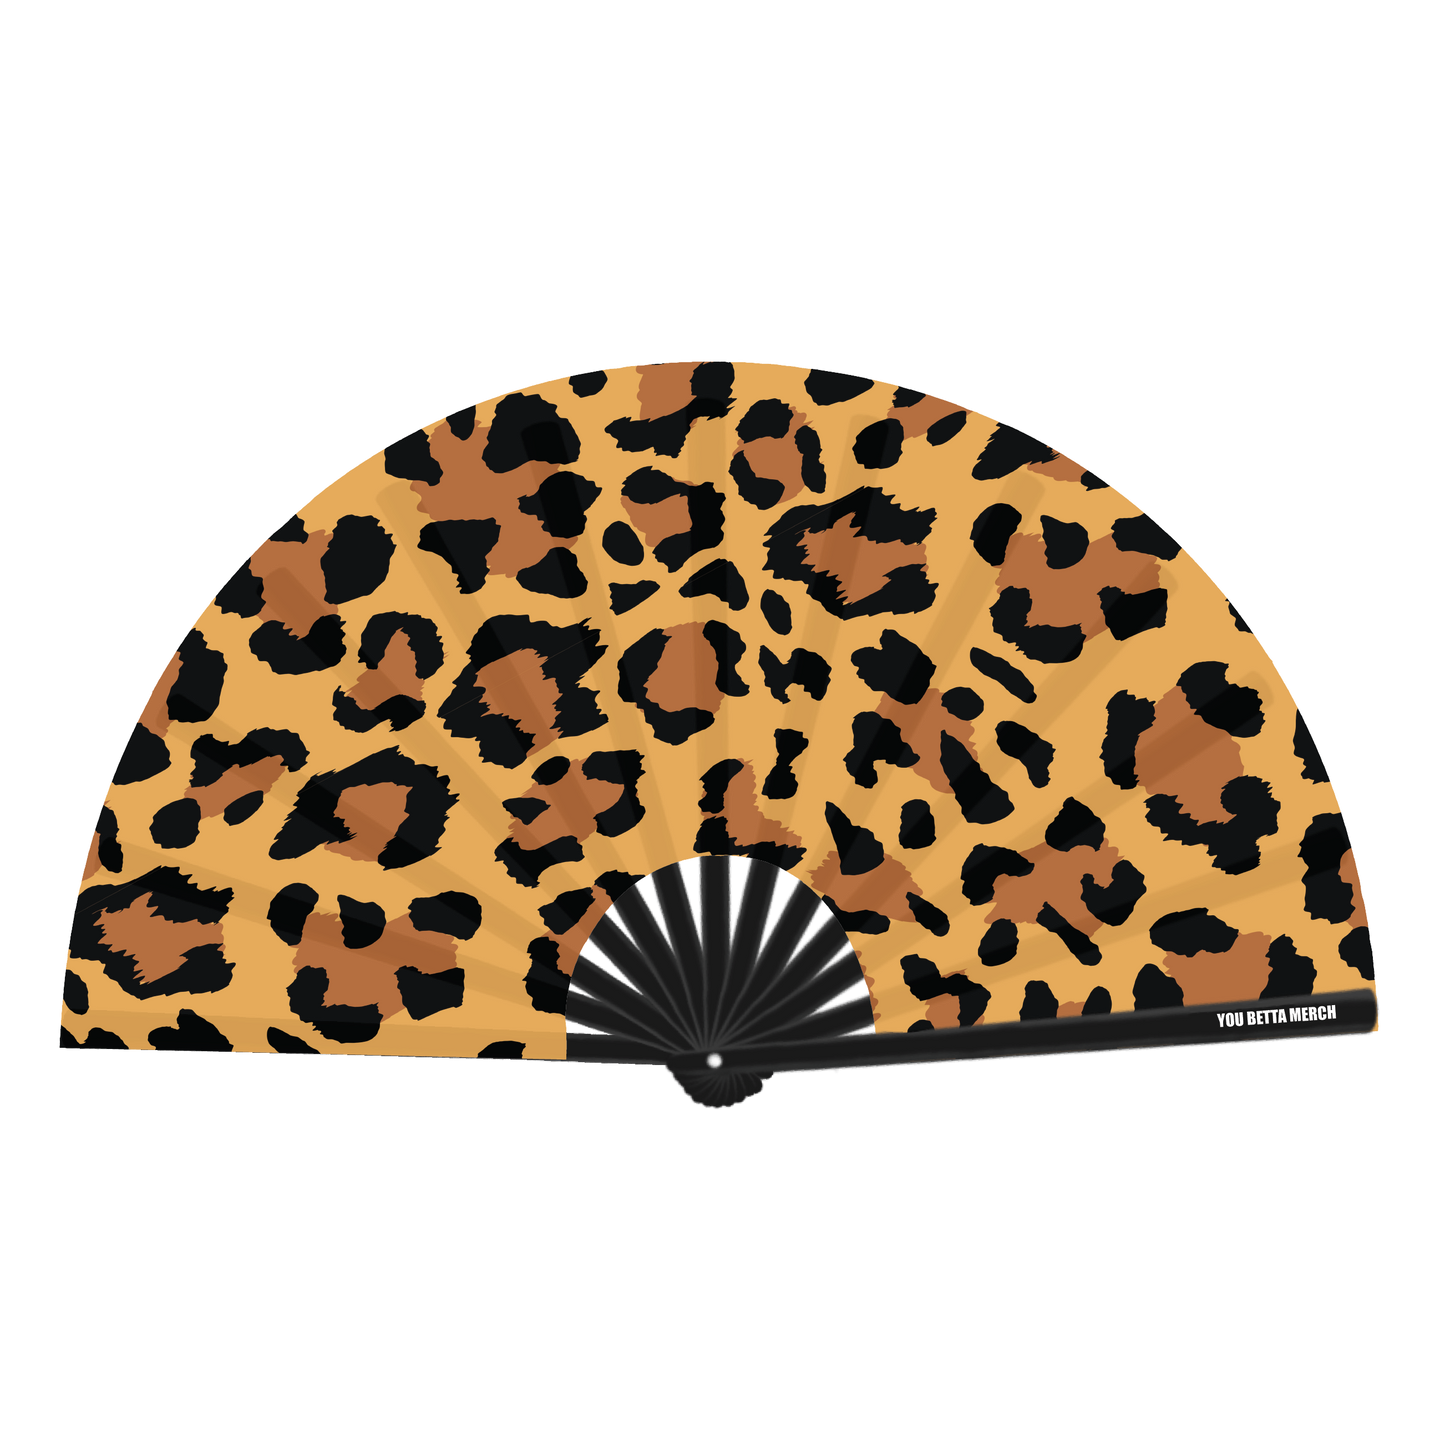 Leopard Print Fan